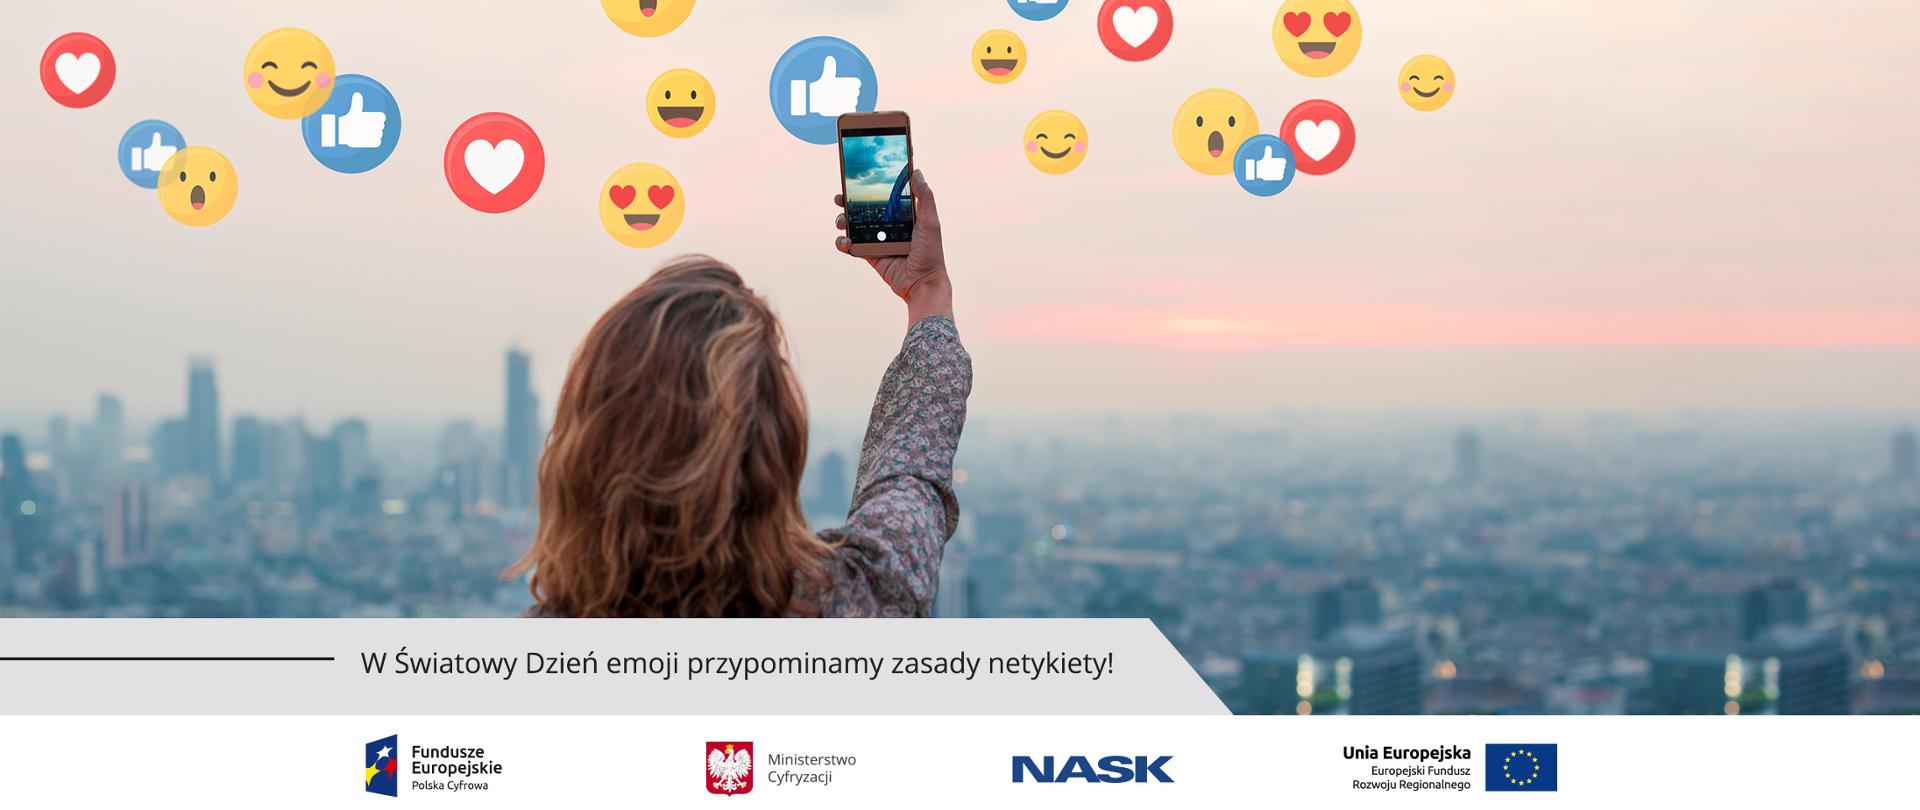 Kobieta robiąca sobie selfie. Przed nią panorama miasta i symbole emotikonów. Na dole napis: W Światowy Dzień emoji przypominamy zasady netykiety!